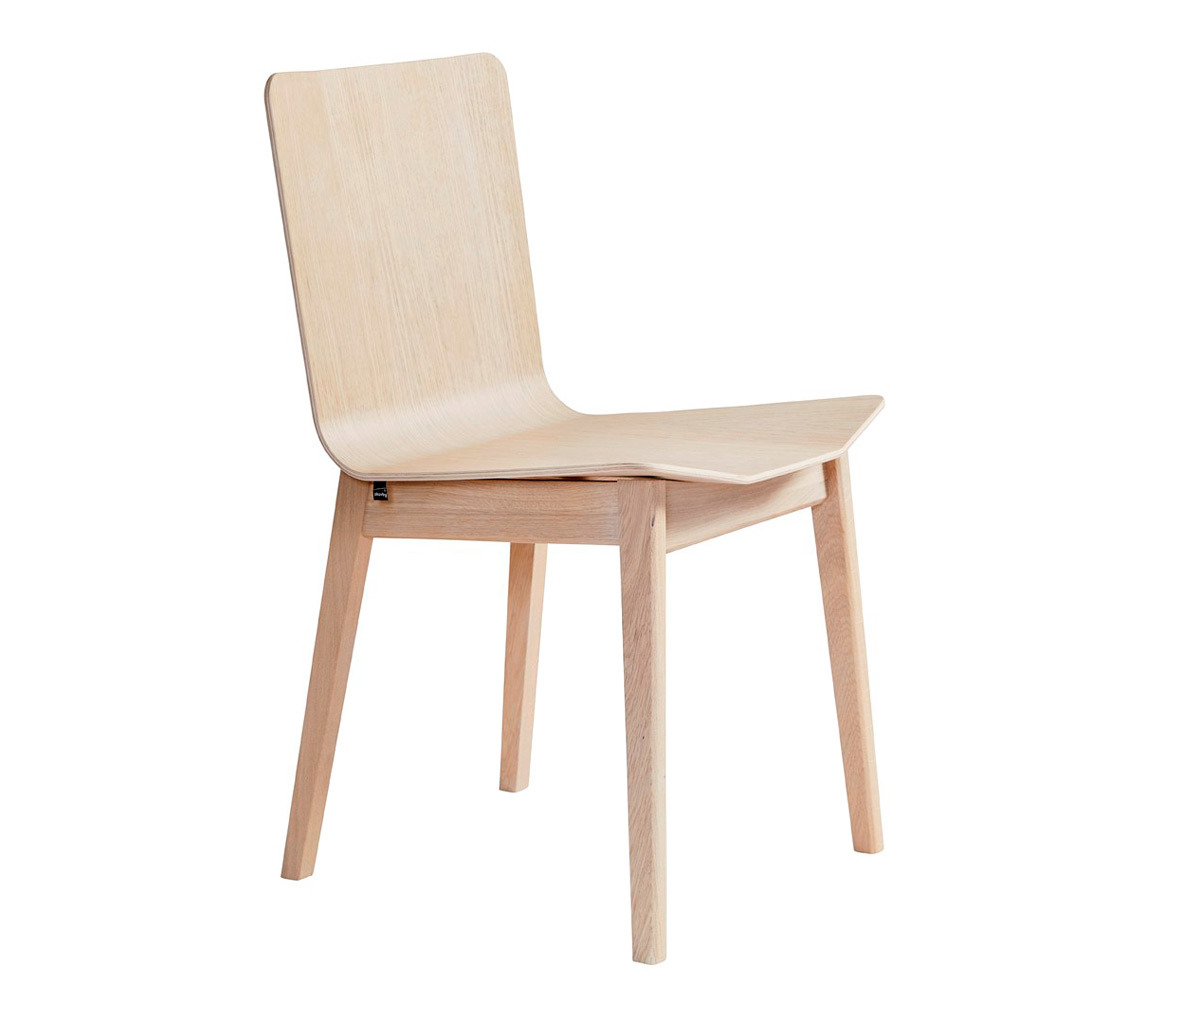 Chair #807